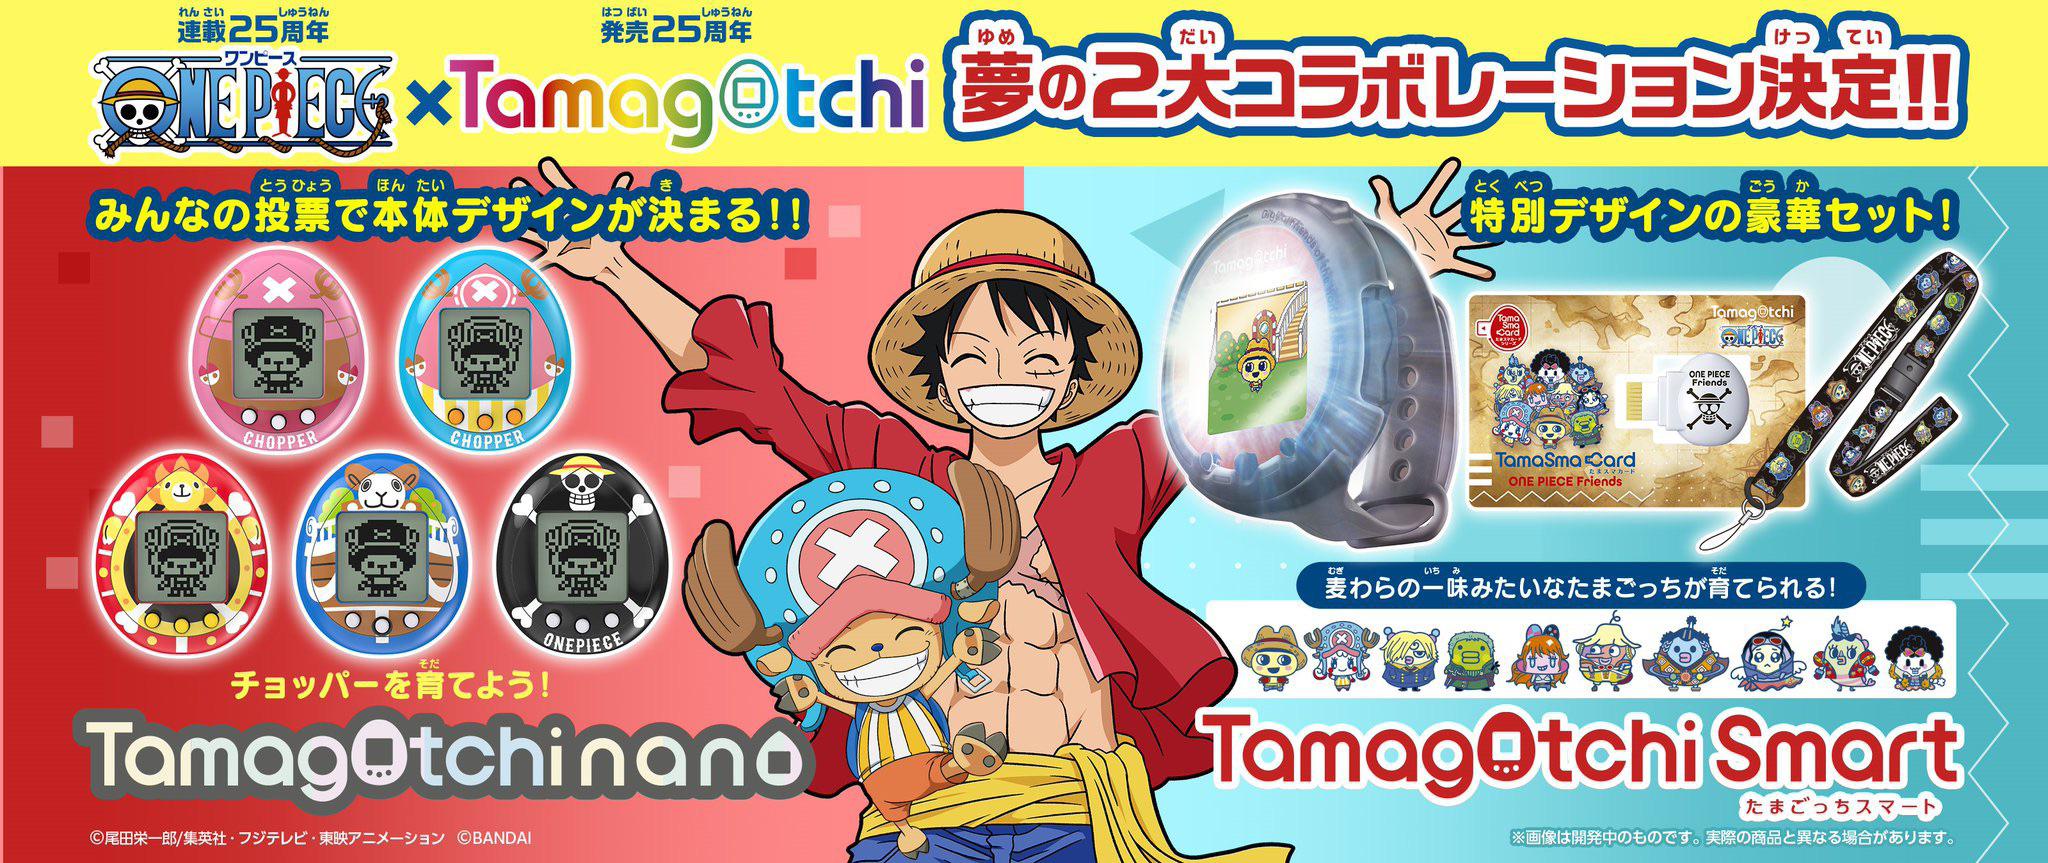 BANDAI Tamagotchi Smart One Piece Special Set Tamagotchi One Piece Friends  Nov